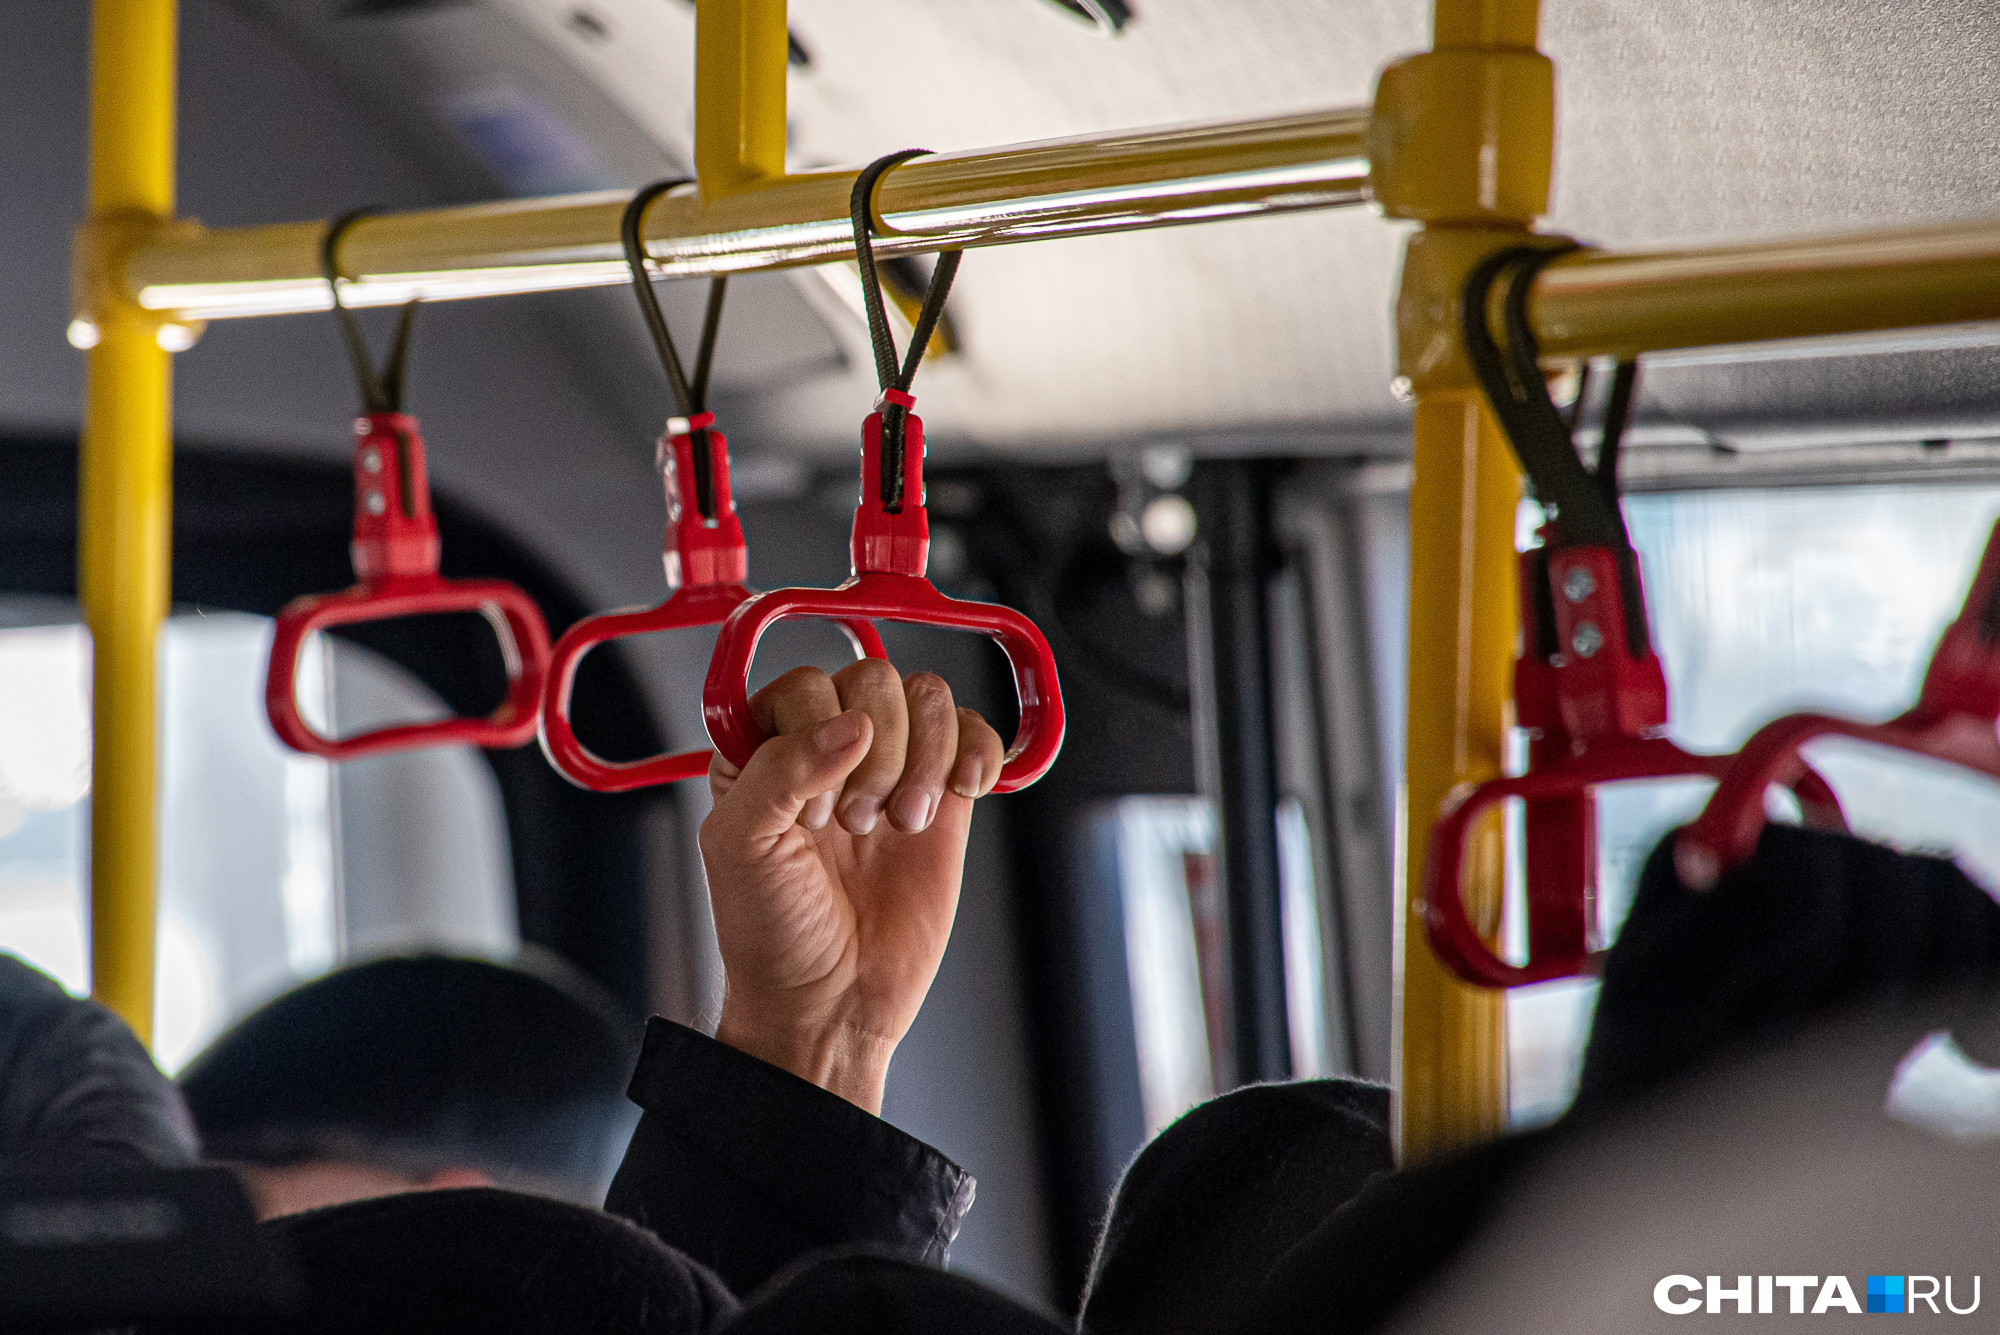 Троллейбус № 2 в Чите будет частично работать без кондуктора